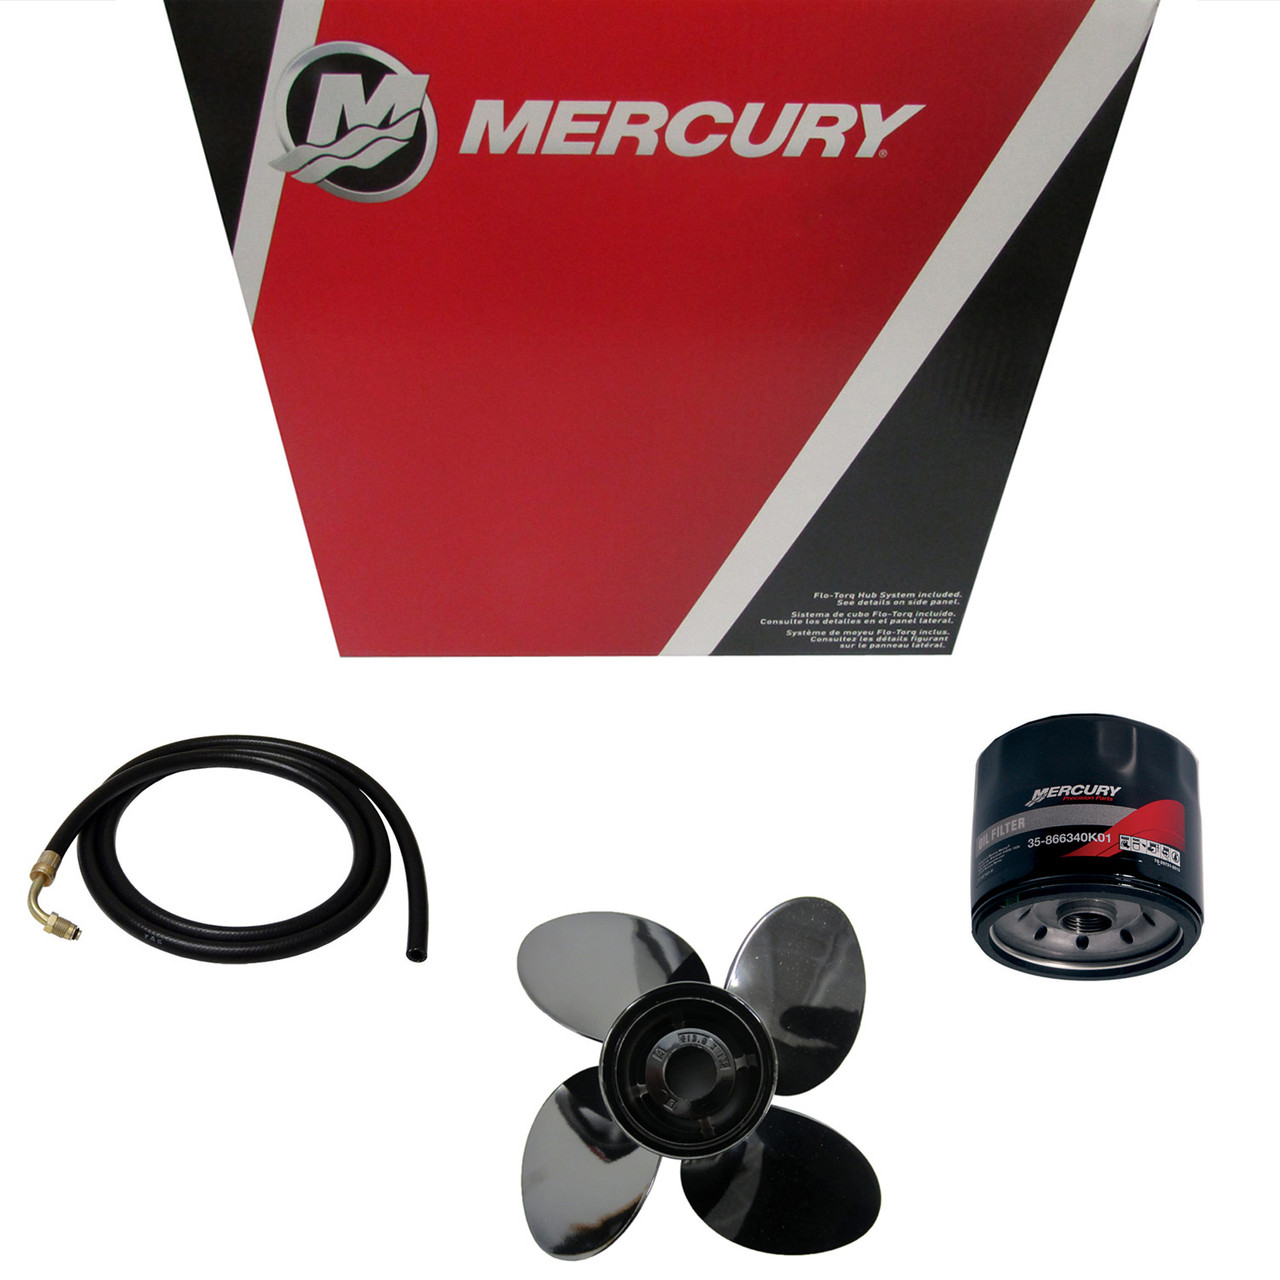 Mercury Marine / Mercruiser New OEM Anode Kit(Alum), 97-888761Q03